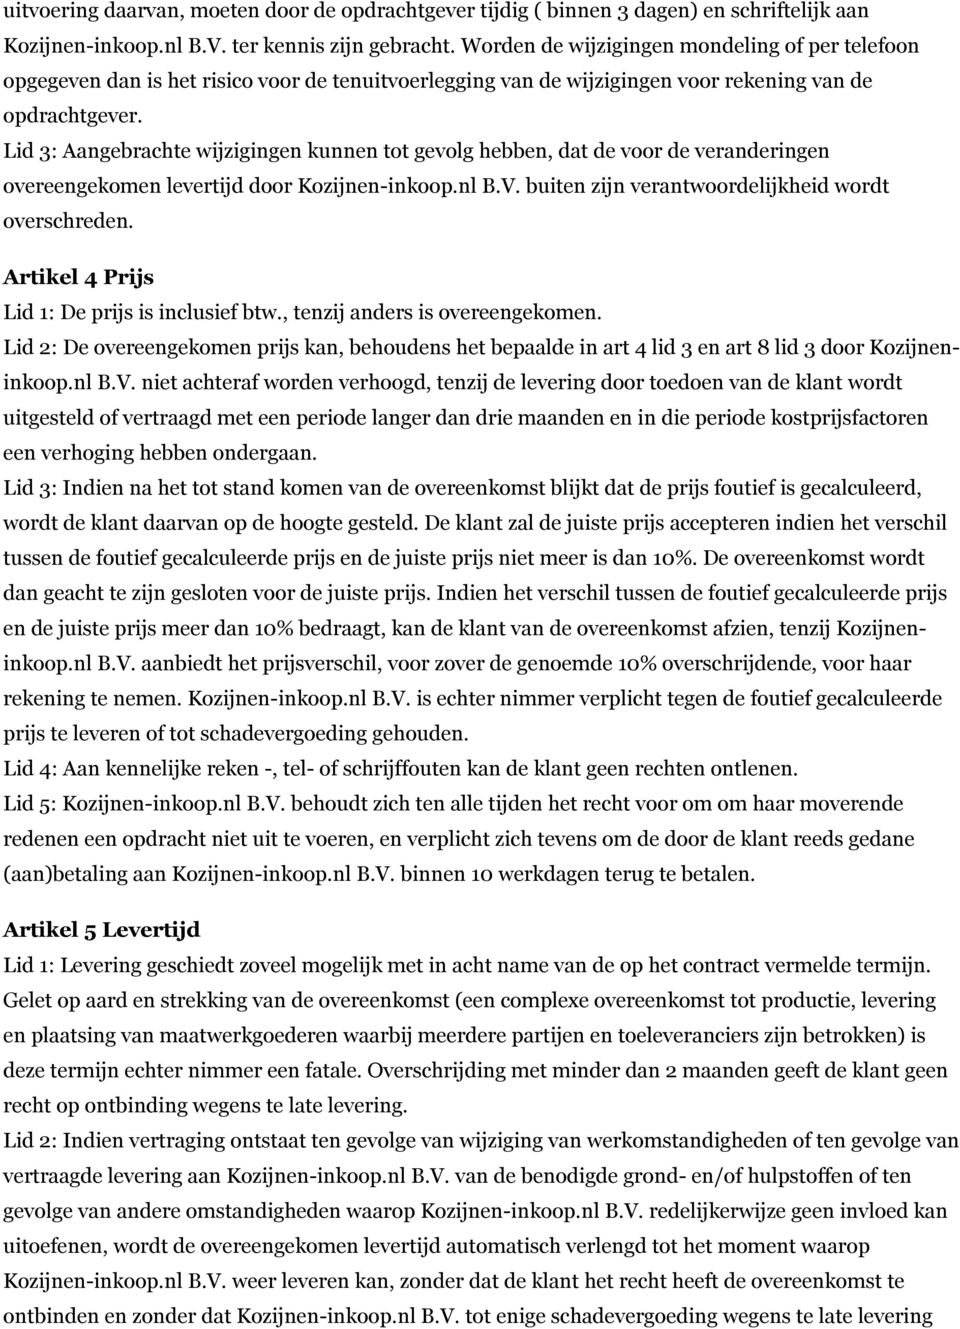 Lid 3: Aangebrachte wijzigingen kunnen tot gevolg hebben, dat de voor de veranderingen overeengekomen levertijd door Kozijnen-inkoop.nl B.V. buiten zijn verantwoordelijkheid wordt overschreden.